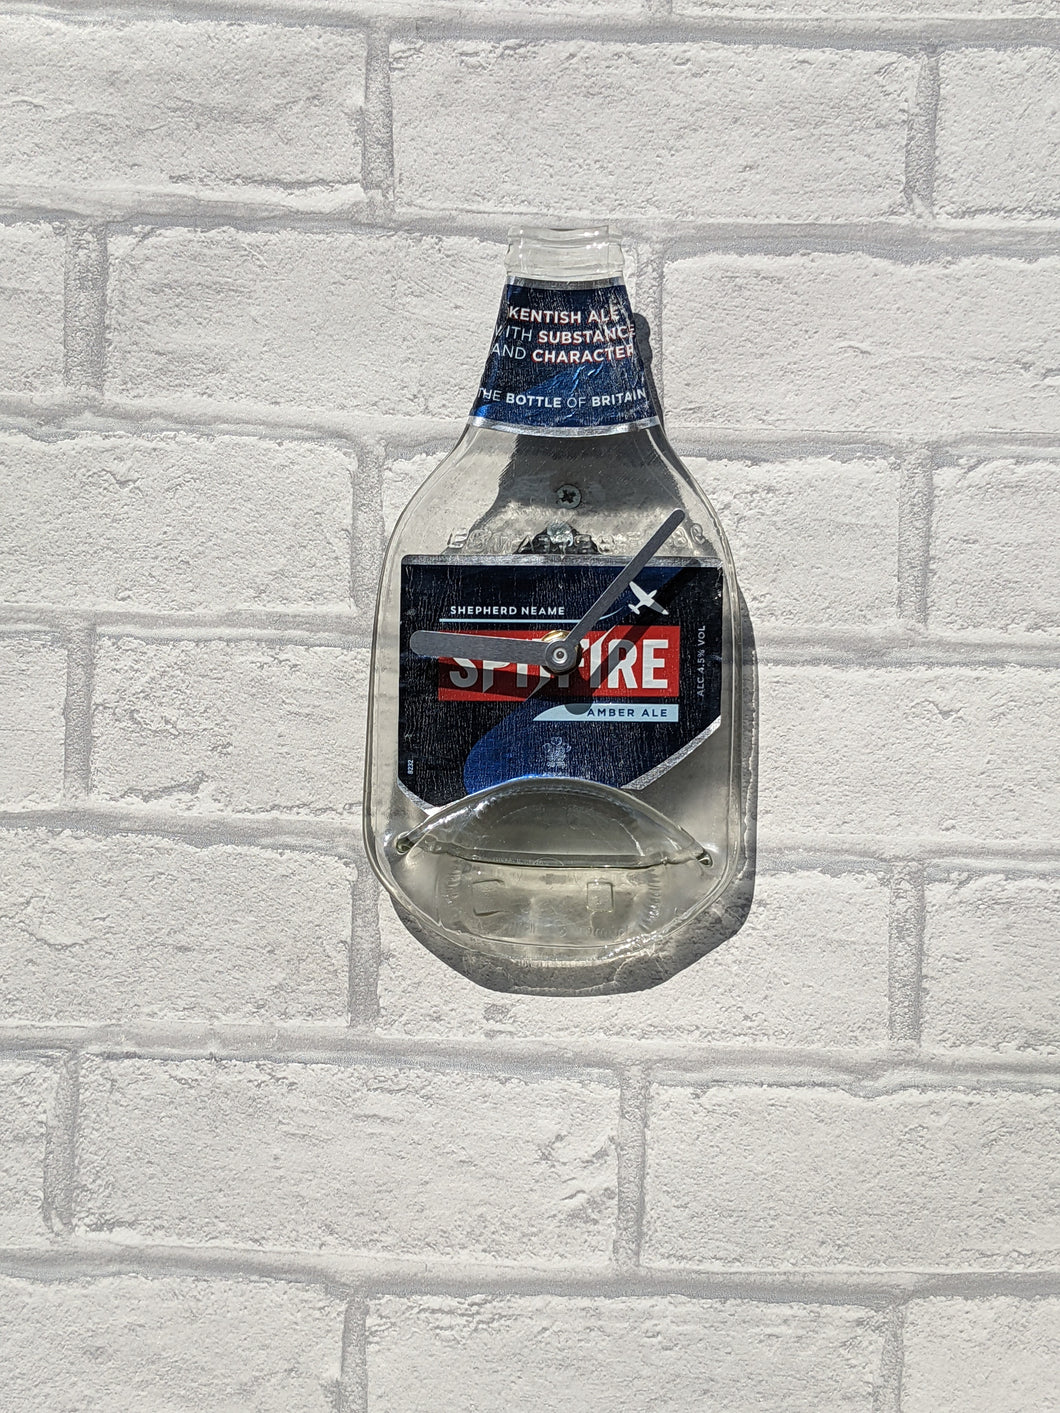 Spitfire beer bottle clock